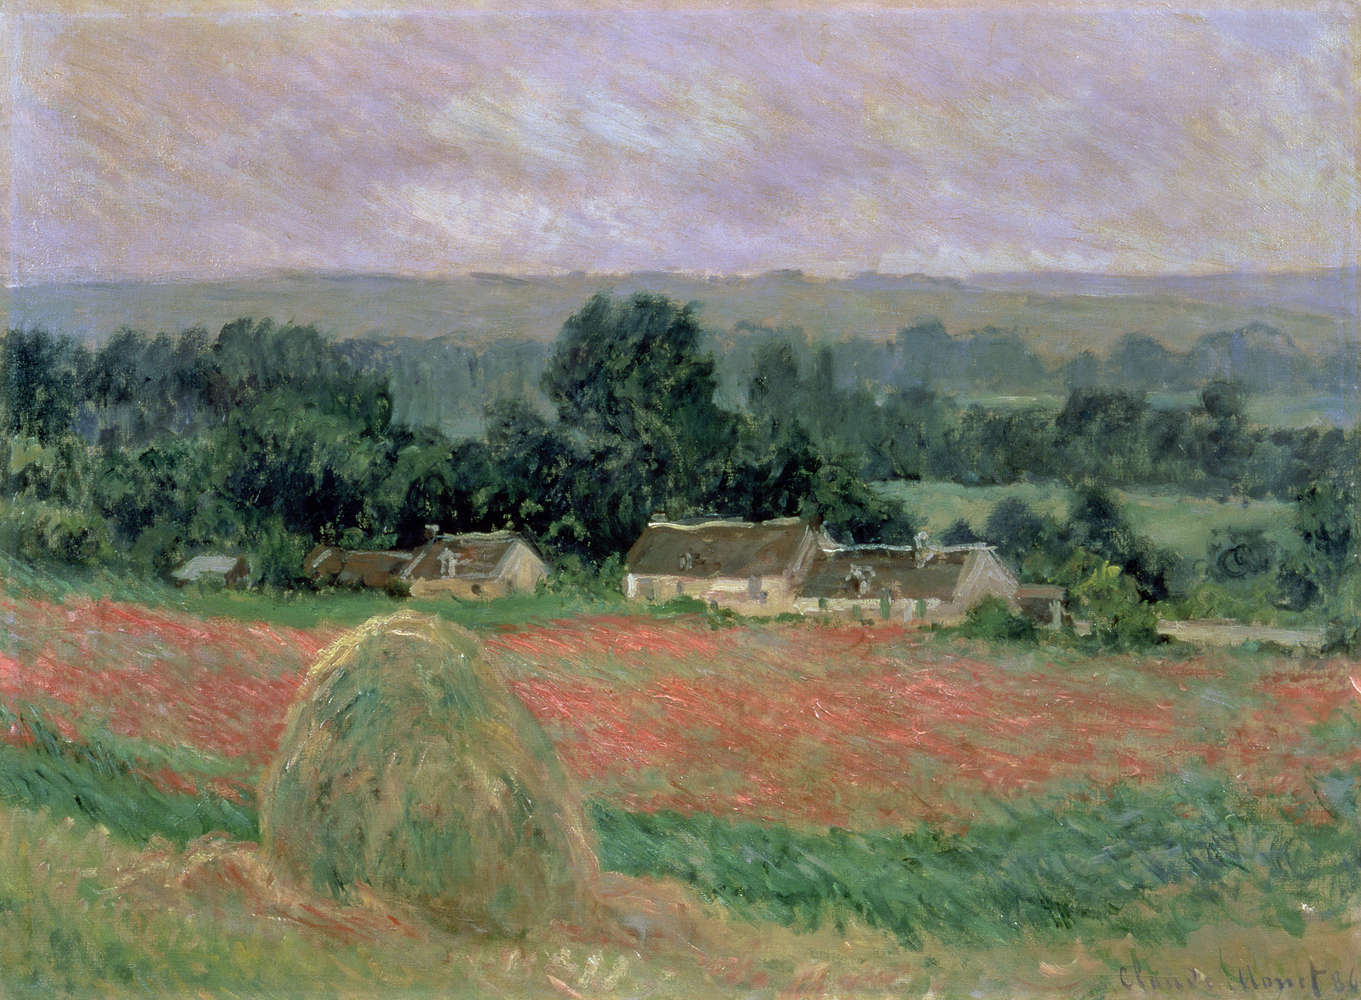             Hooiberg in Giverny" muurschildering van Claude Monet
        